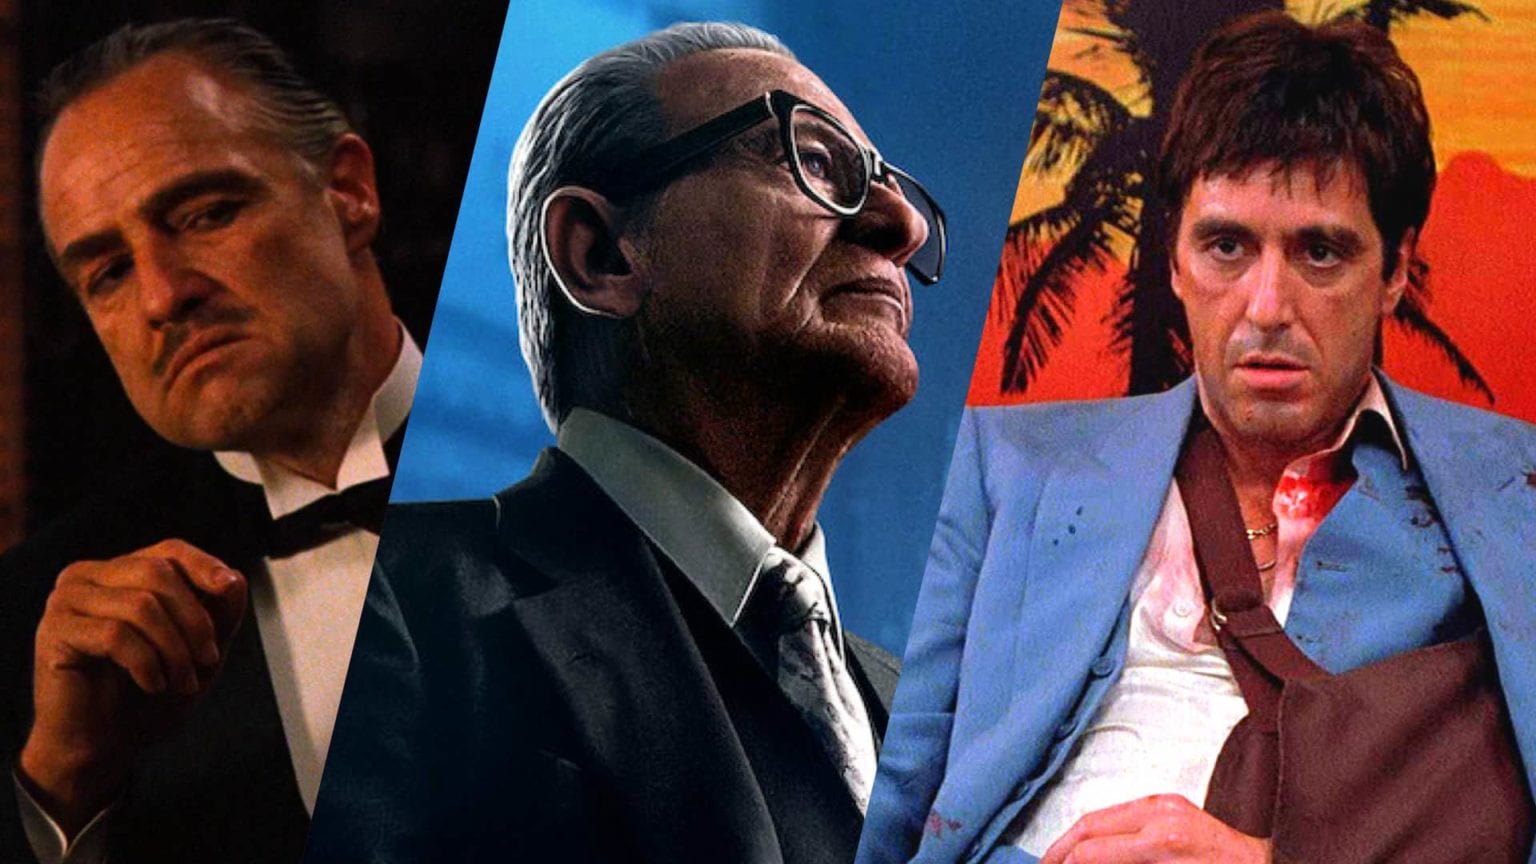 Las 25 películas imprescindibles sobre la mafia. Las cosas que nos